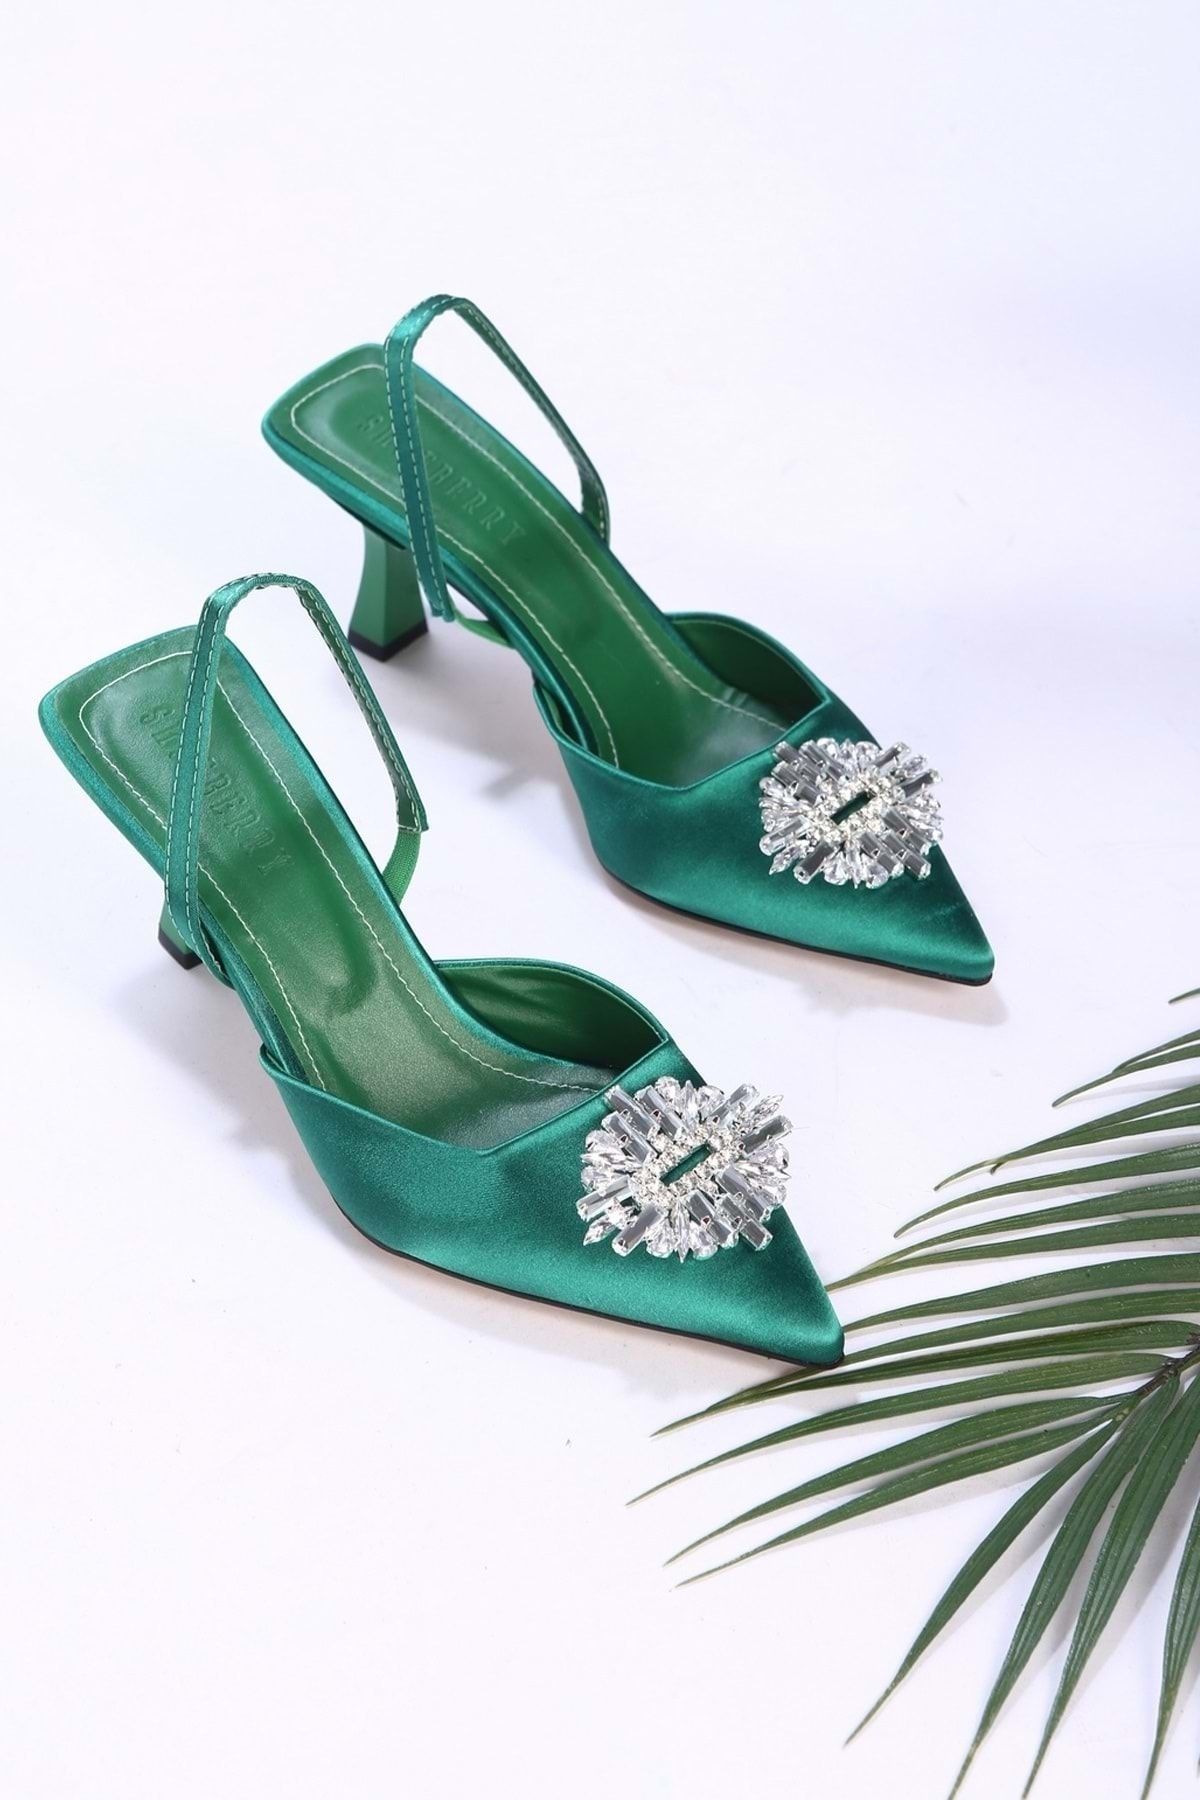 Shoeberry Kadın Verum Zümrüt Yeşili Saten Taşlı Topuklu Ayakkabı